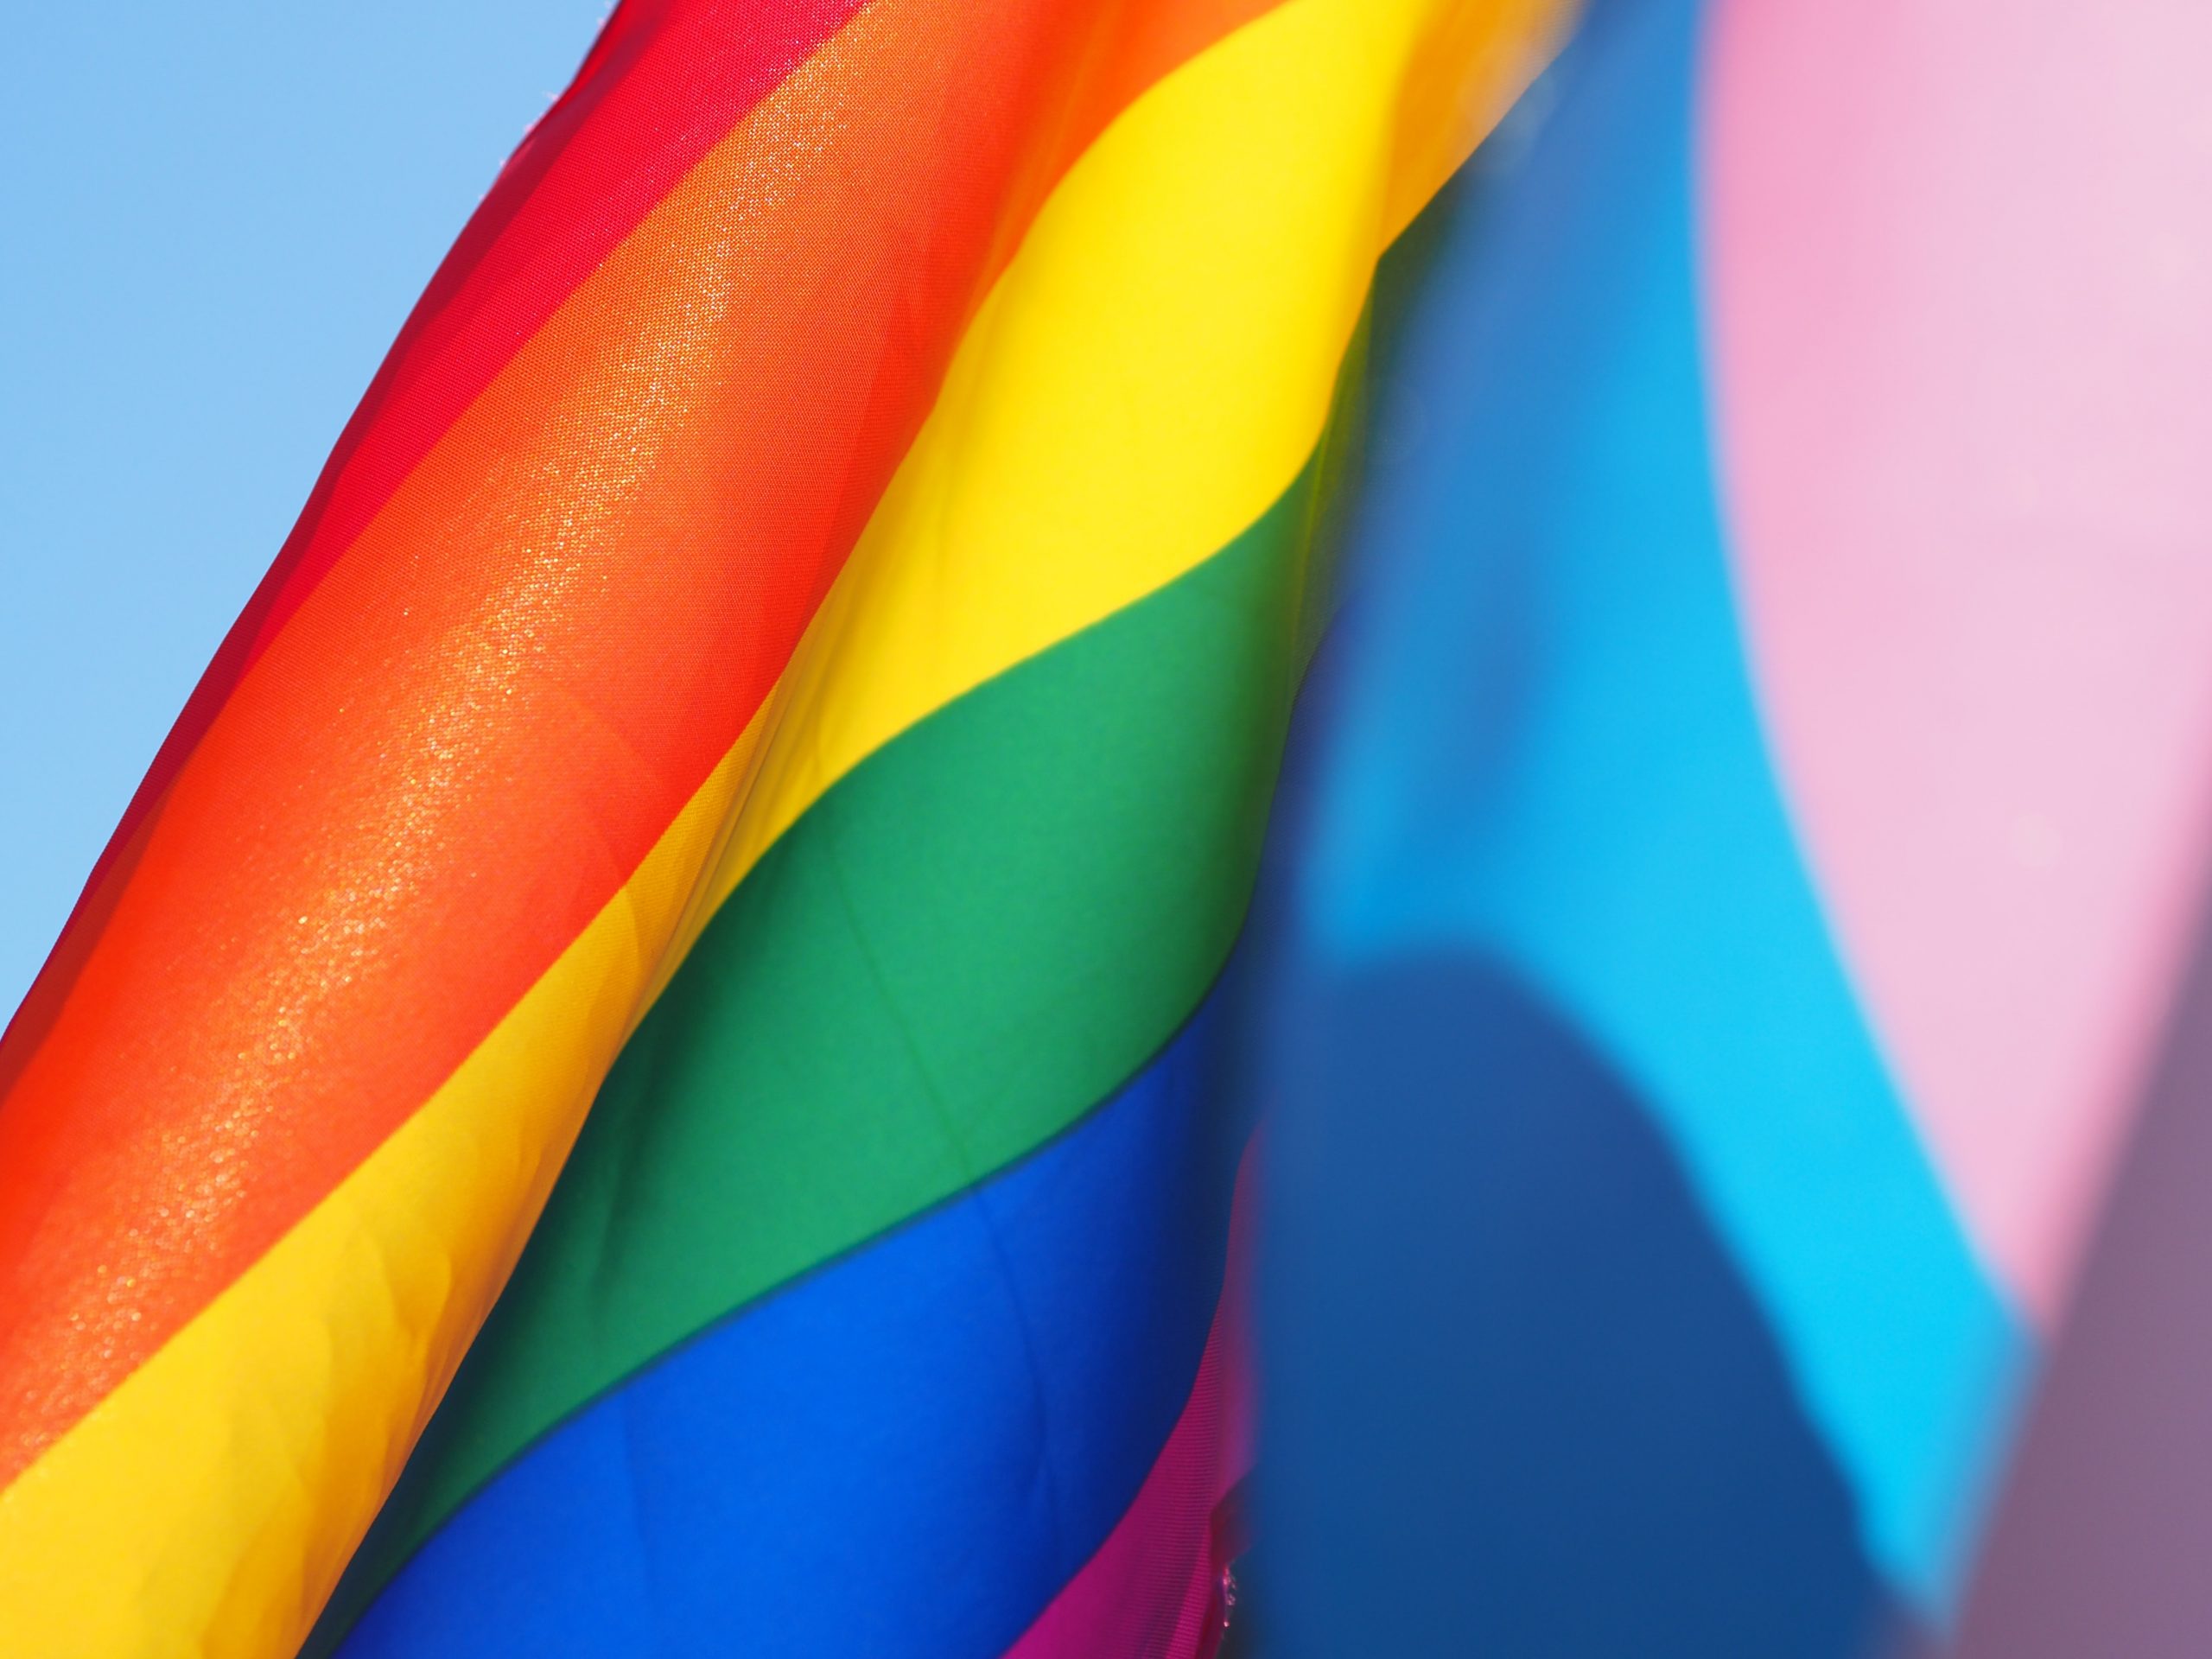 Benção a homossexuais pela Igreja Católica vai aumentar pressão contra a comunidade LGBT em África, afirma responsável da ILGA Pan-Africana